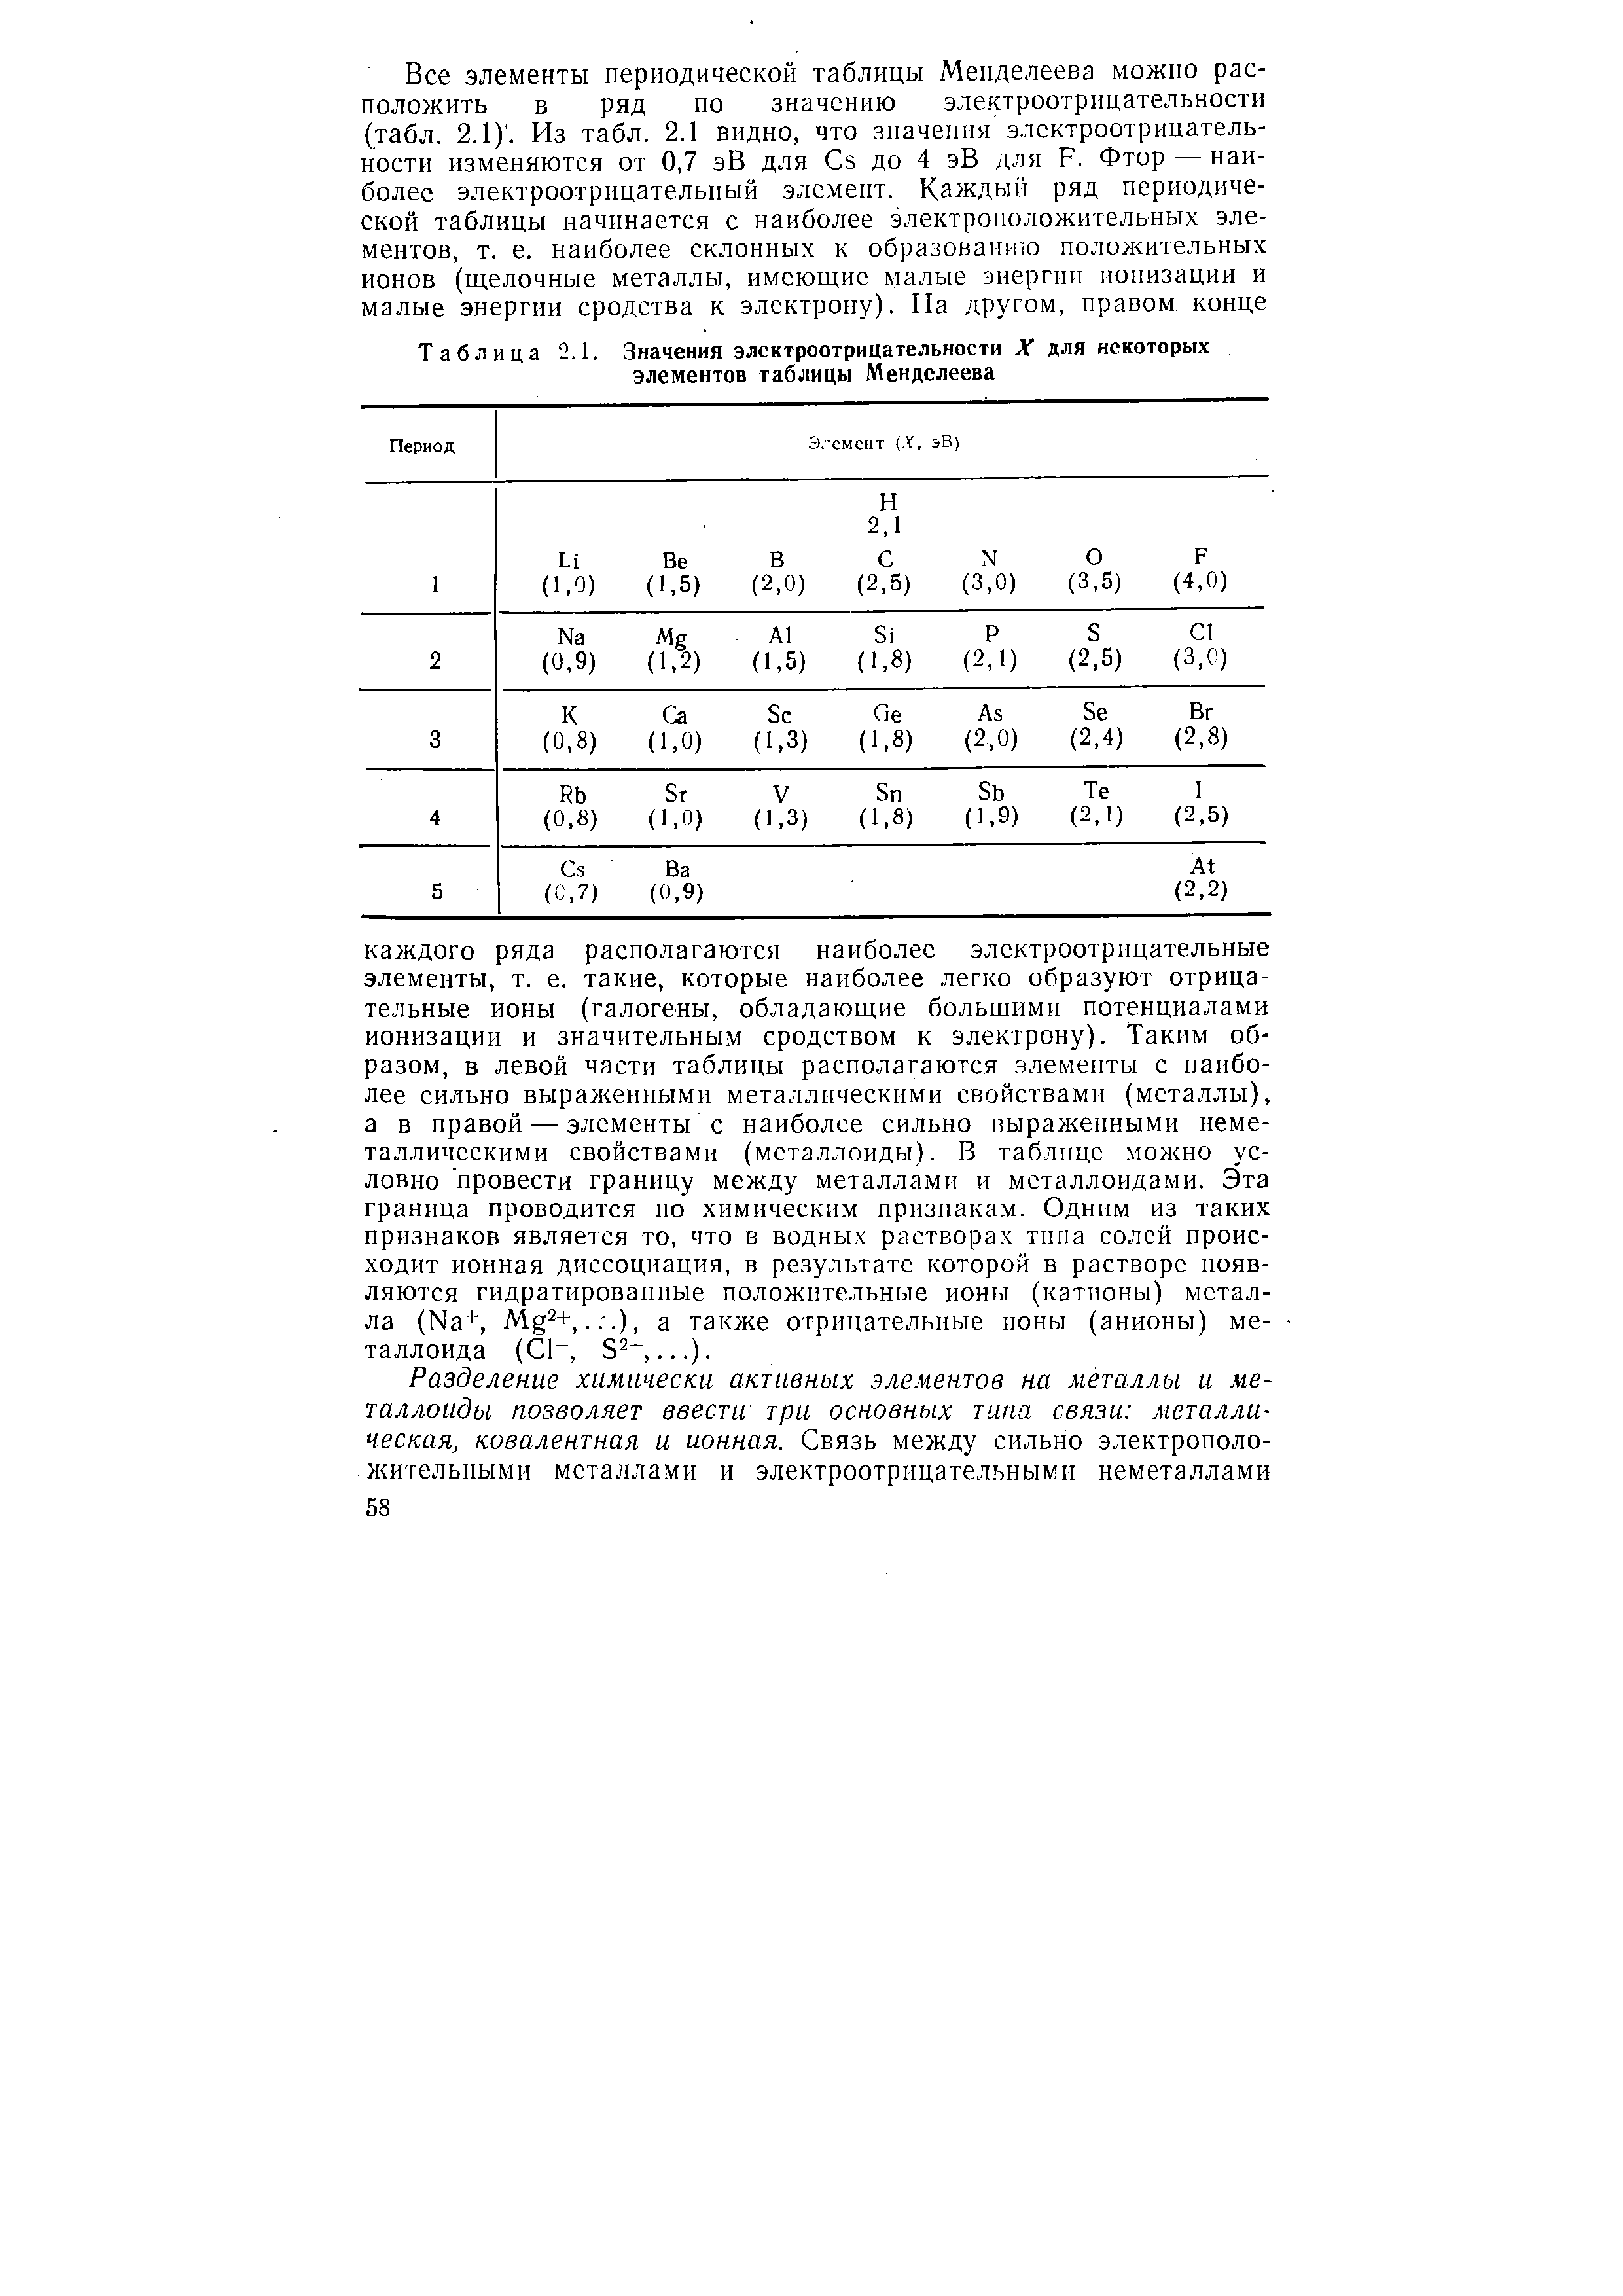 Таблица 2.1. Значения электроотрицательности X для некоторых элементов таблицы Менделеева
